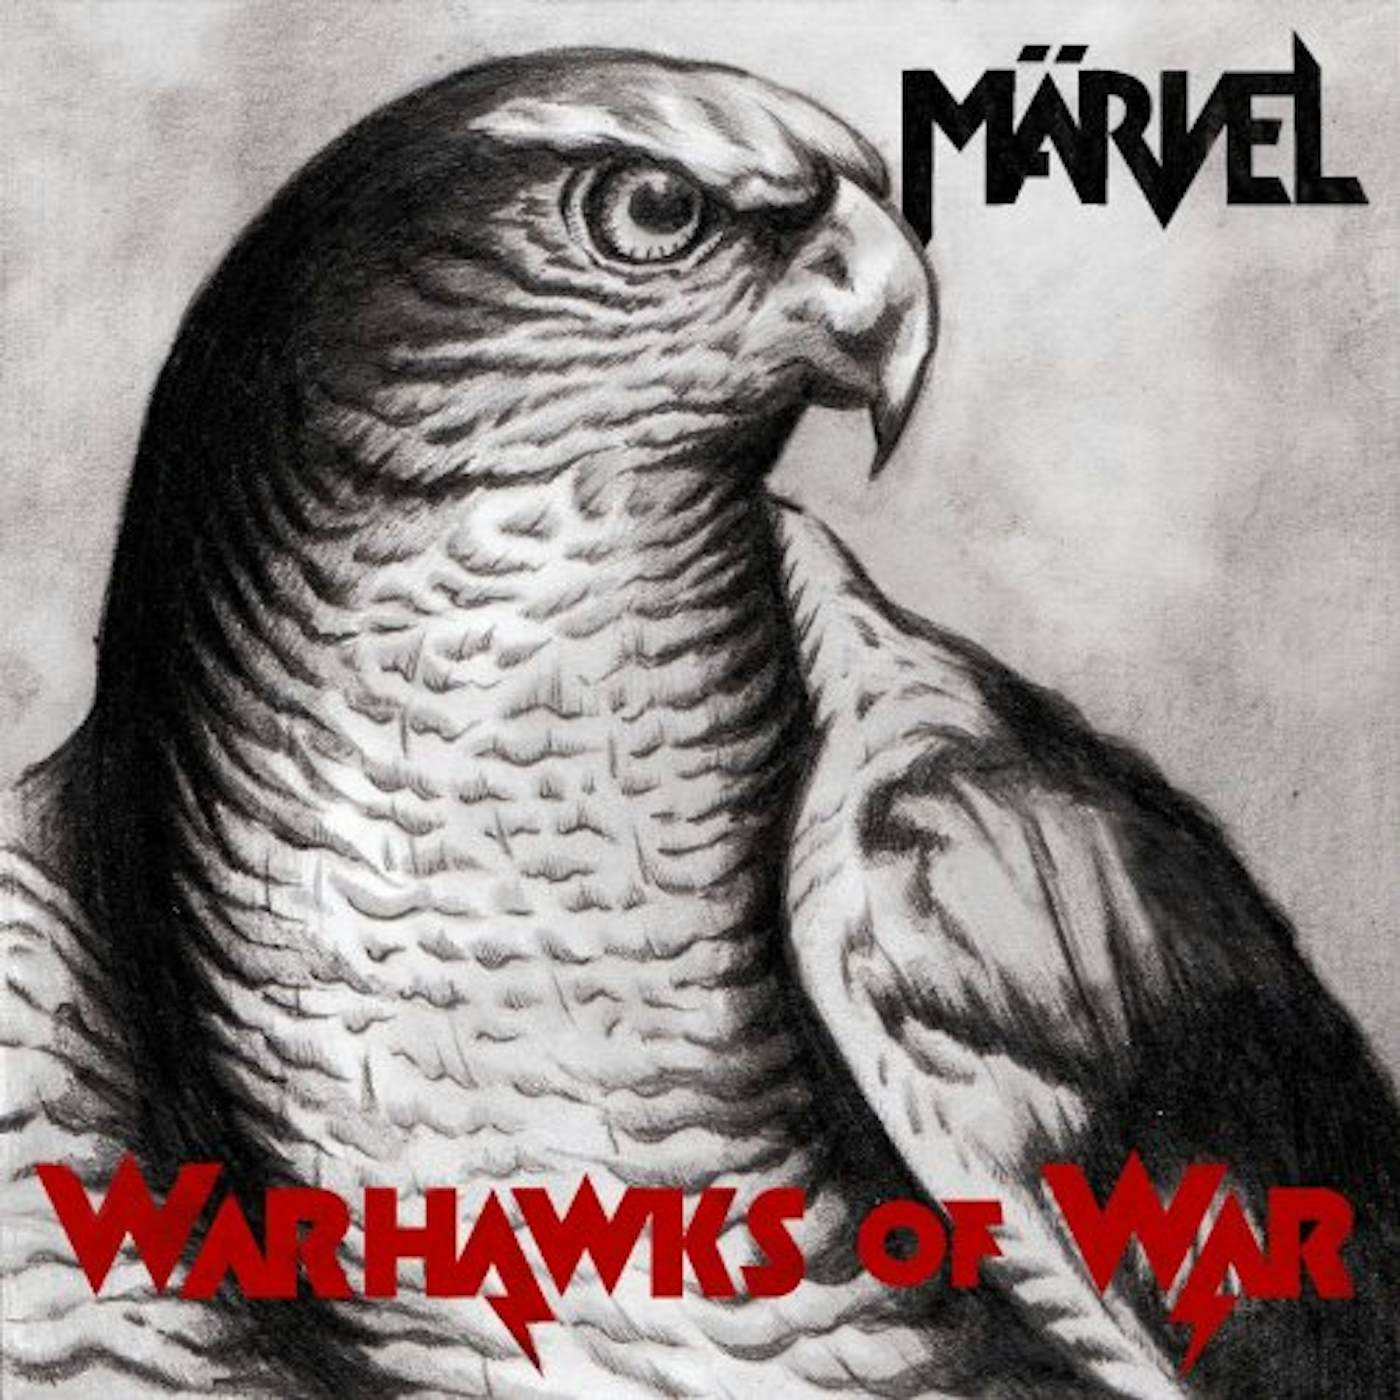 Marvel WARHAWKS OF WAR Vinyl Record